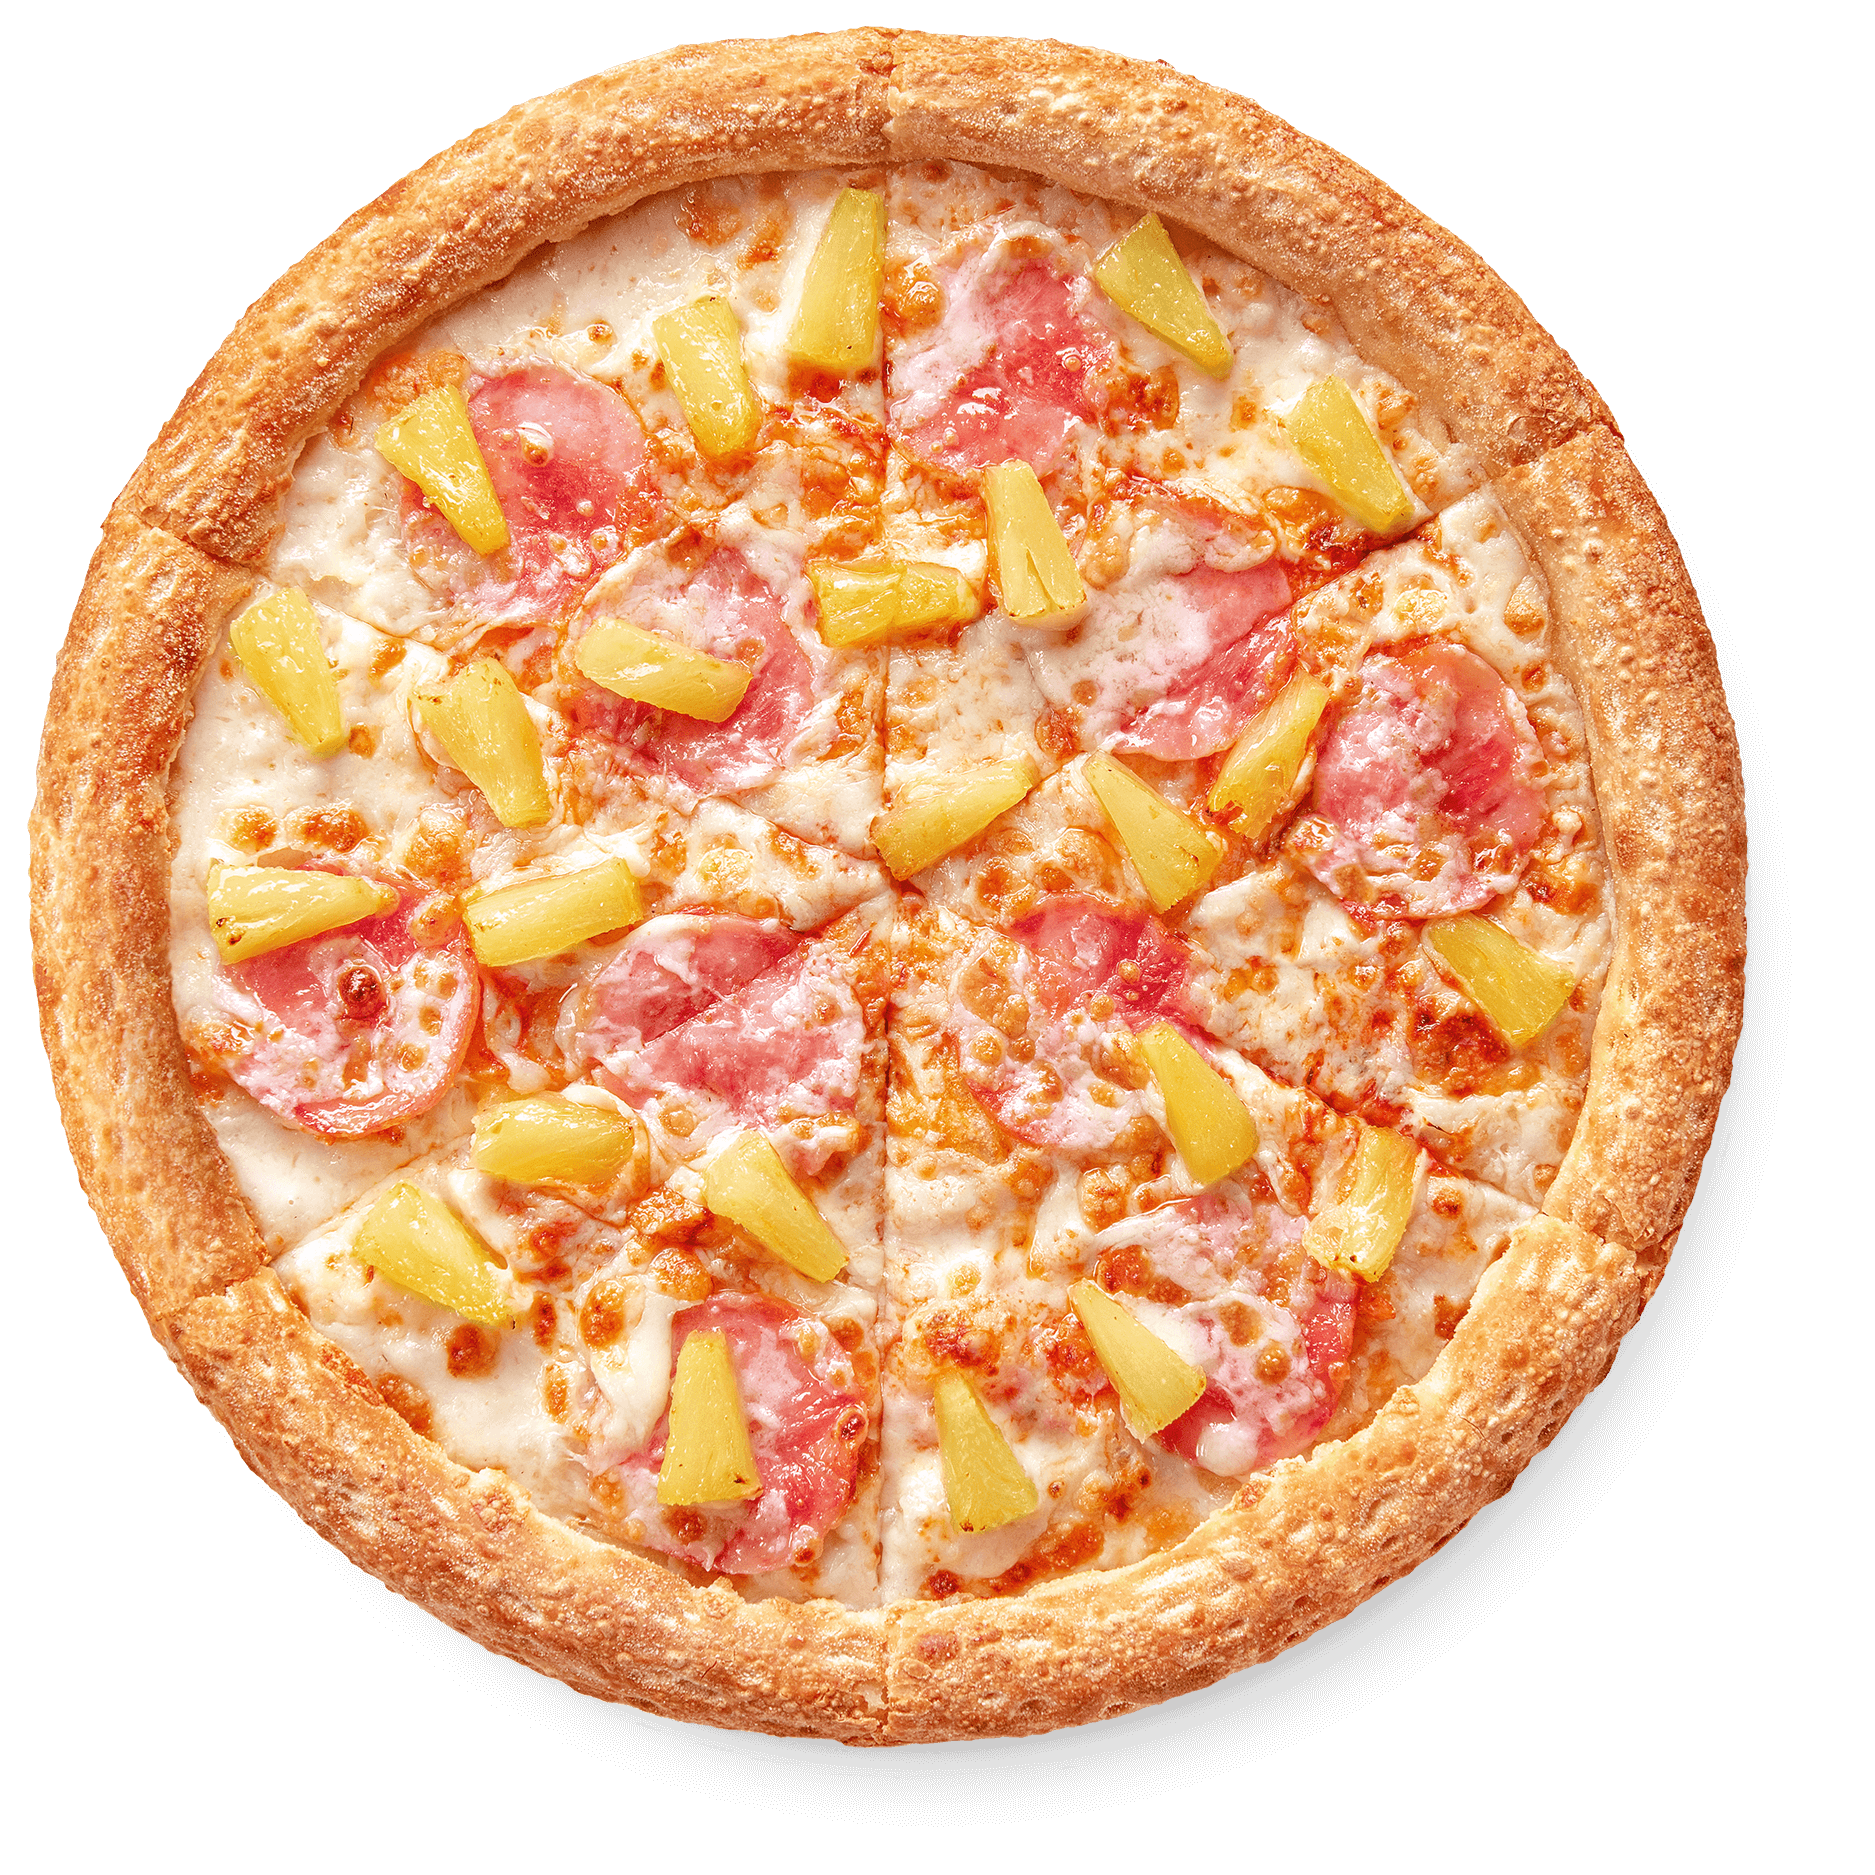 что входит в состав пиццы с ананасами фото 26